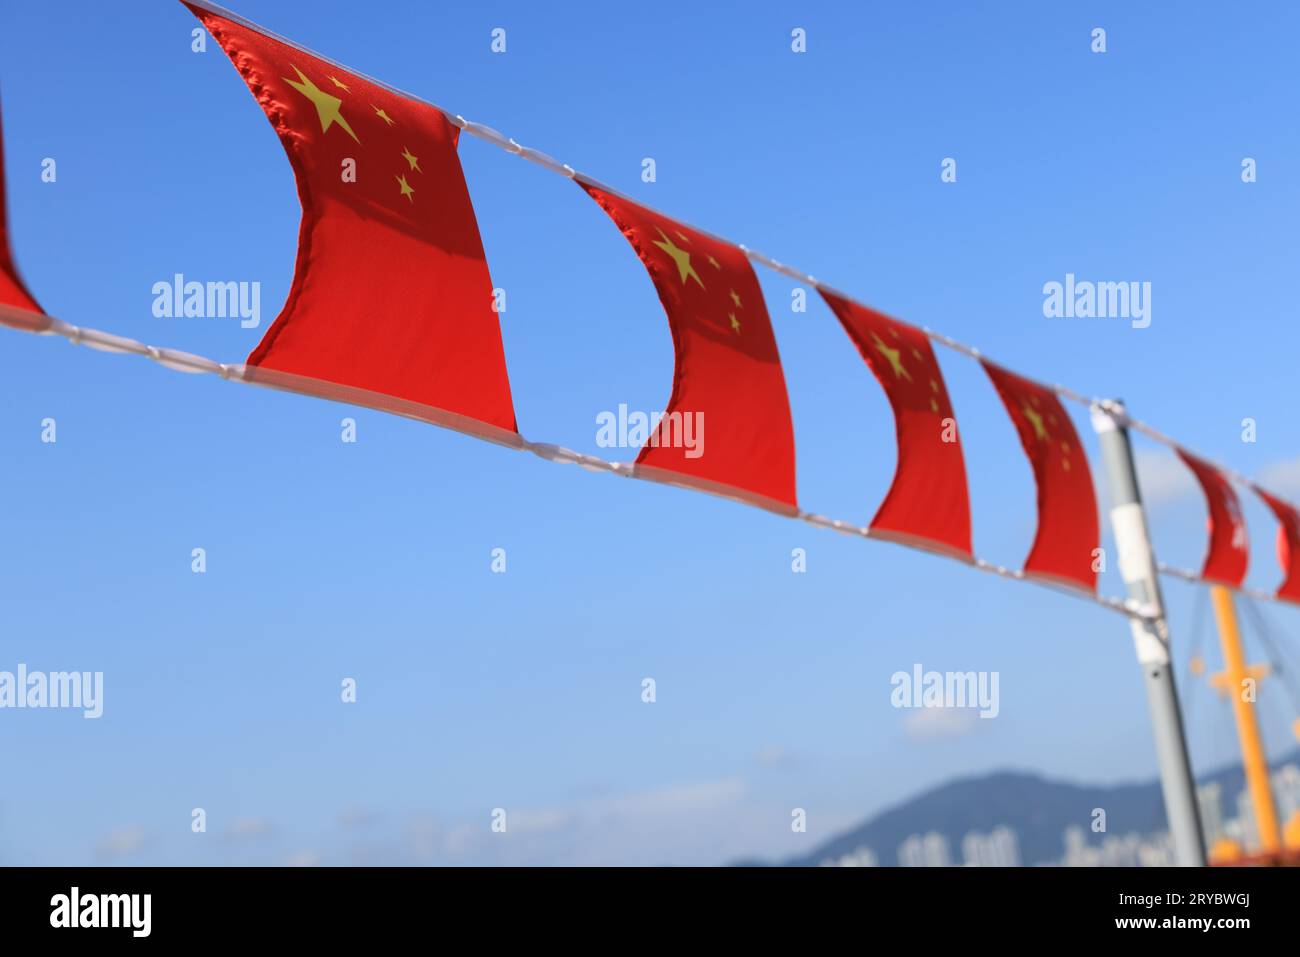 Bandera china y de hong kong establecida en el evento para celebrar el Día Nacional de la República Popular China 74 aniversario en el mercado de Sheung Wan, Hong Kong Foto de stock